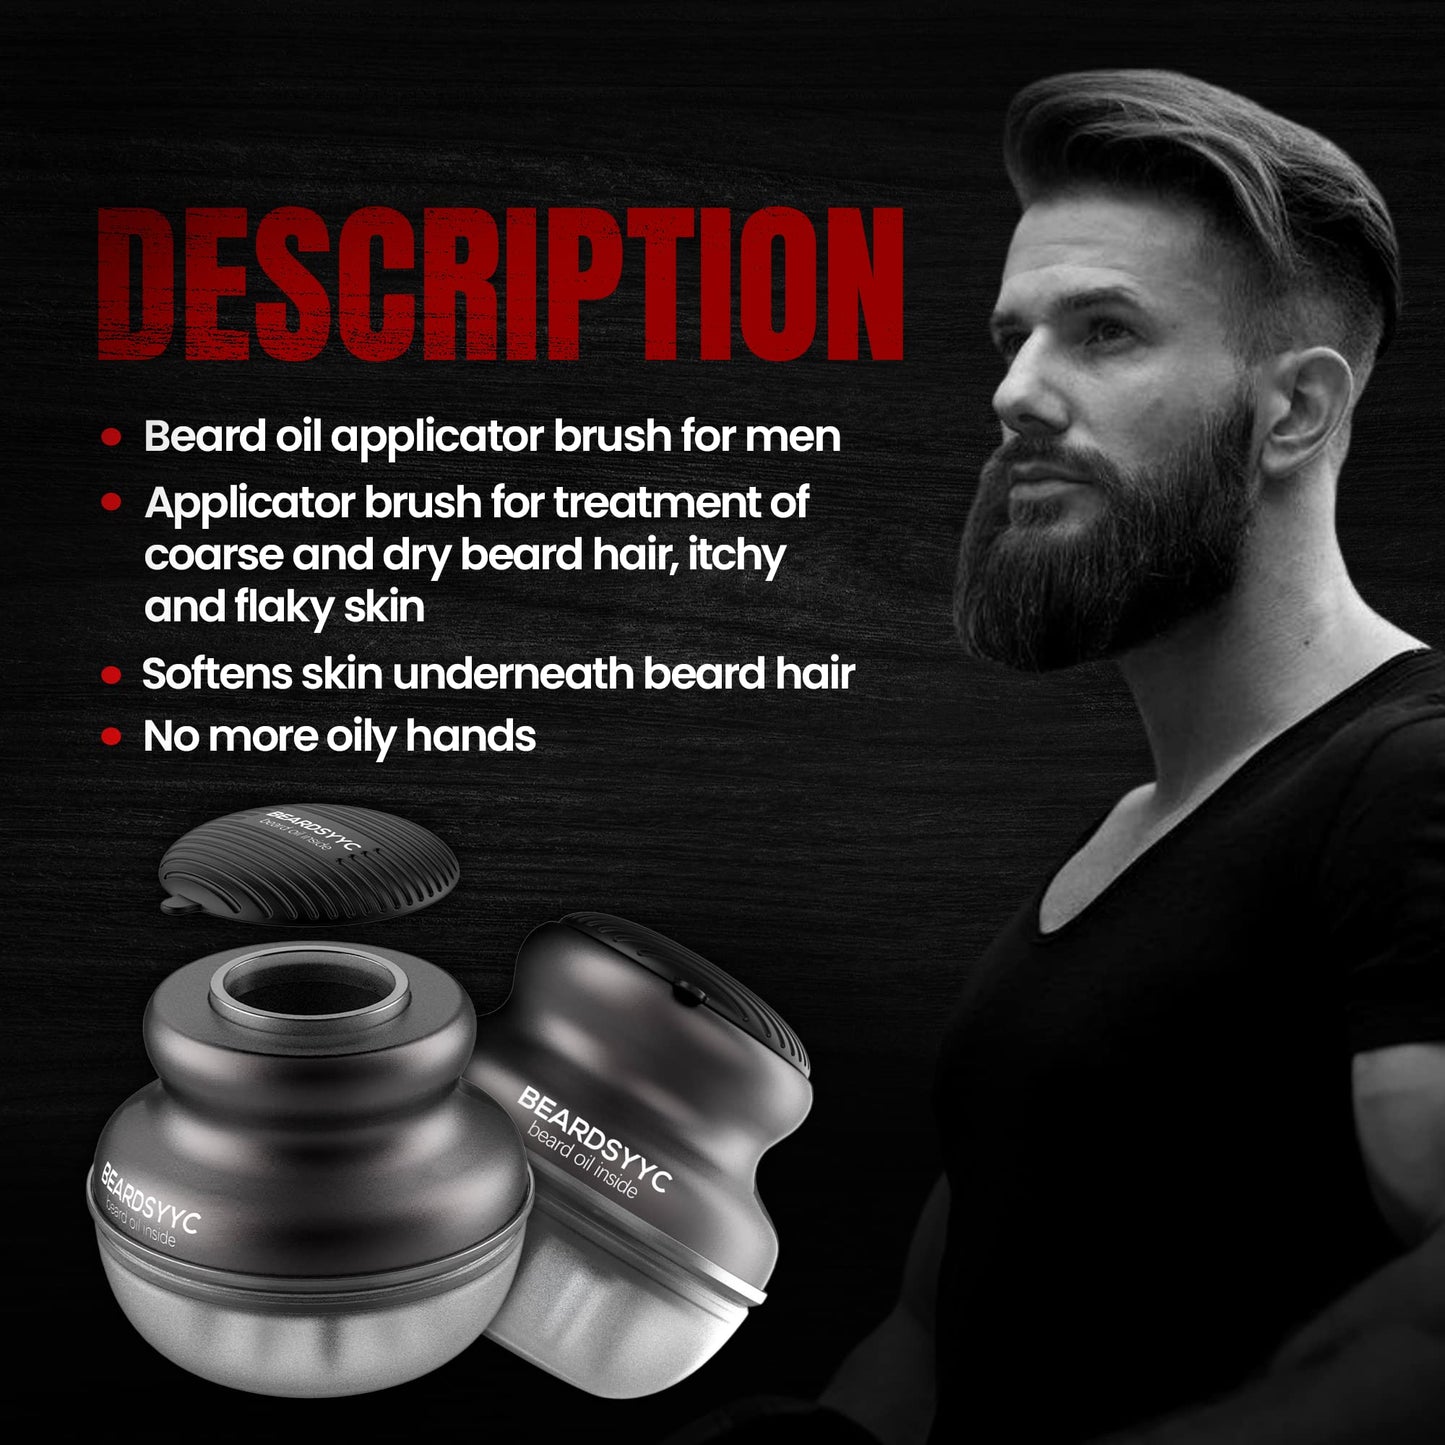 BEARDSYYC Beard Oil Applicator and Brush, Black, Beard Oil Dispenser/Releaser for all Beard Type, 1.0 Count